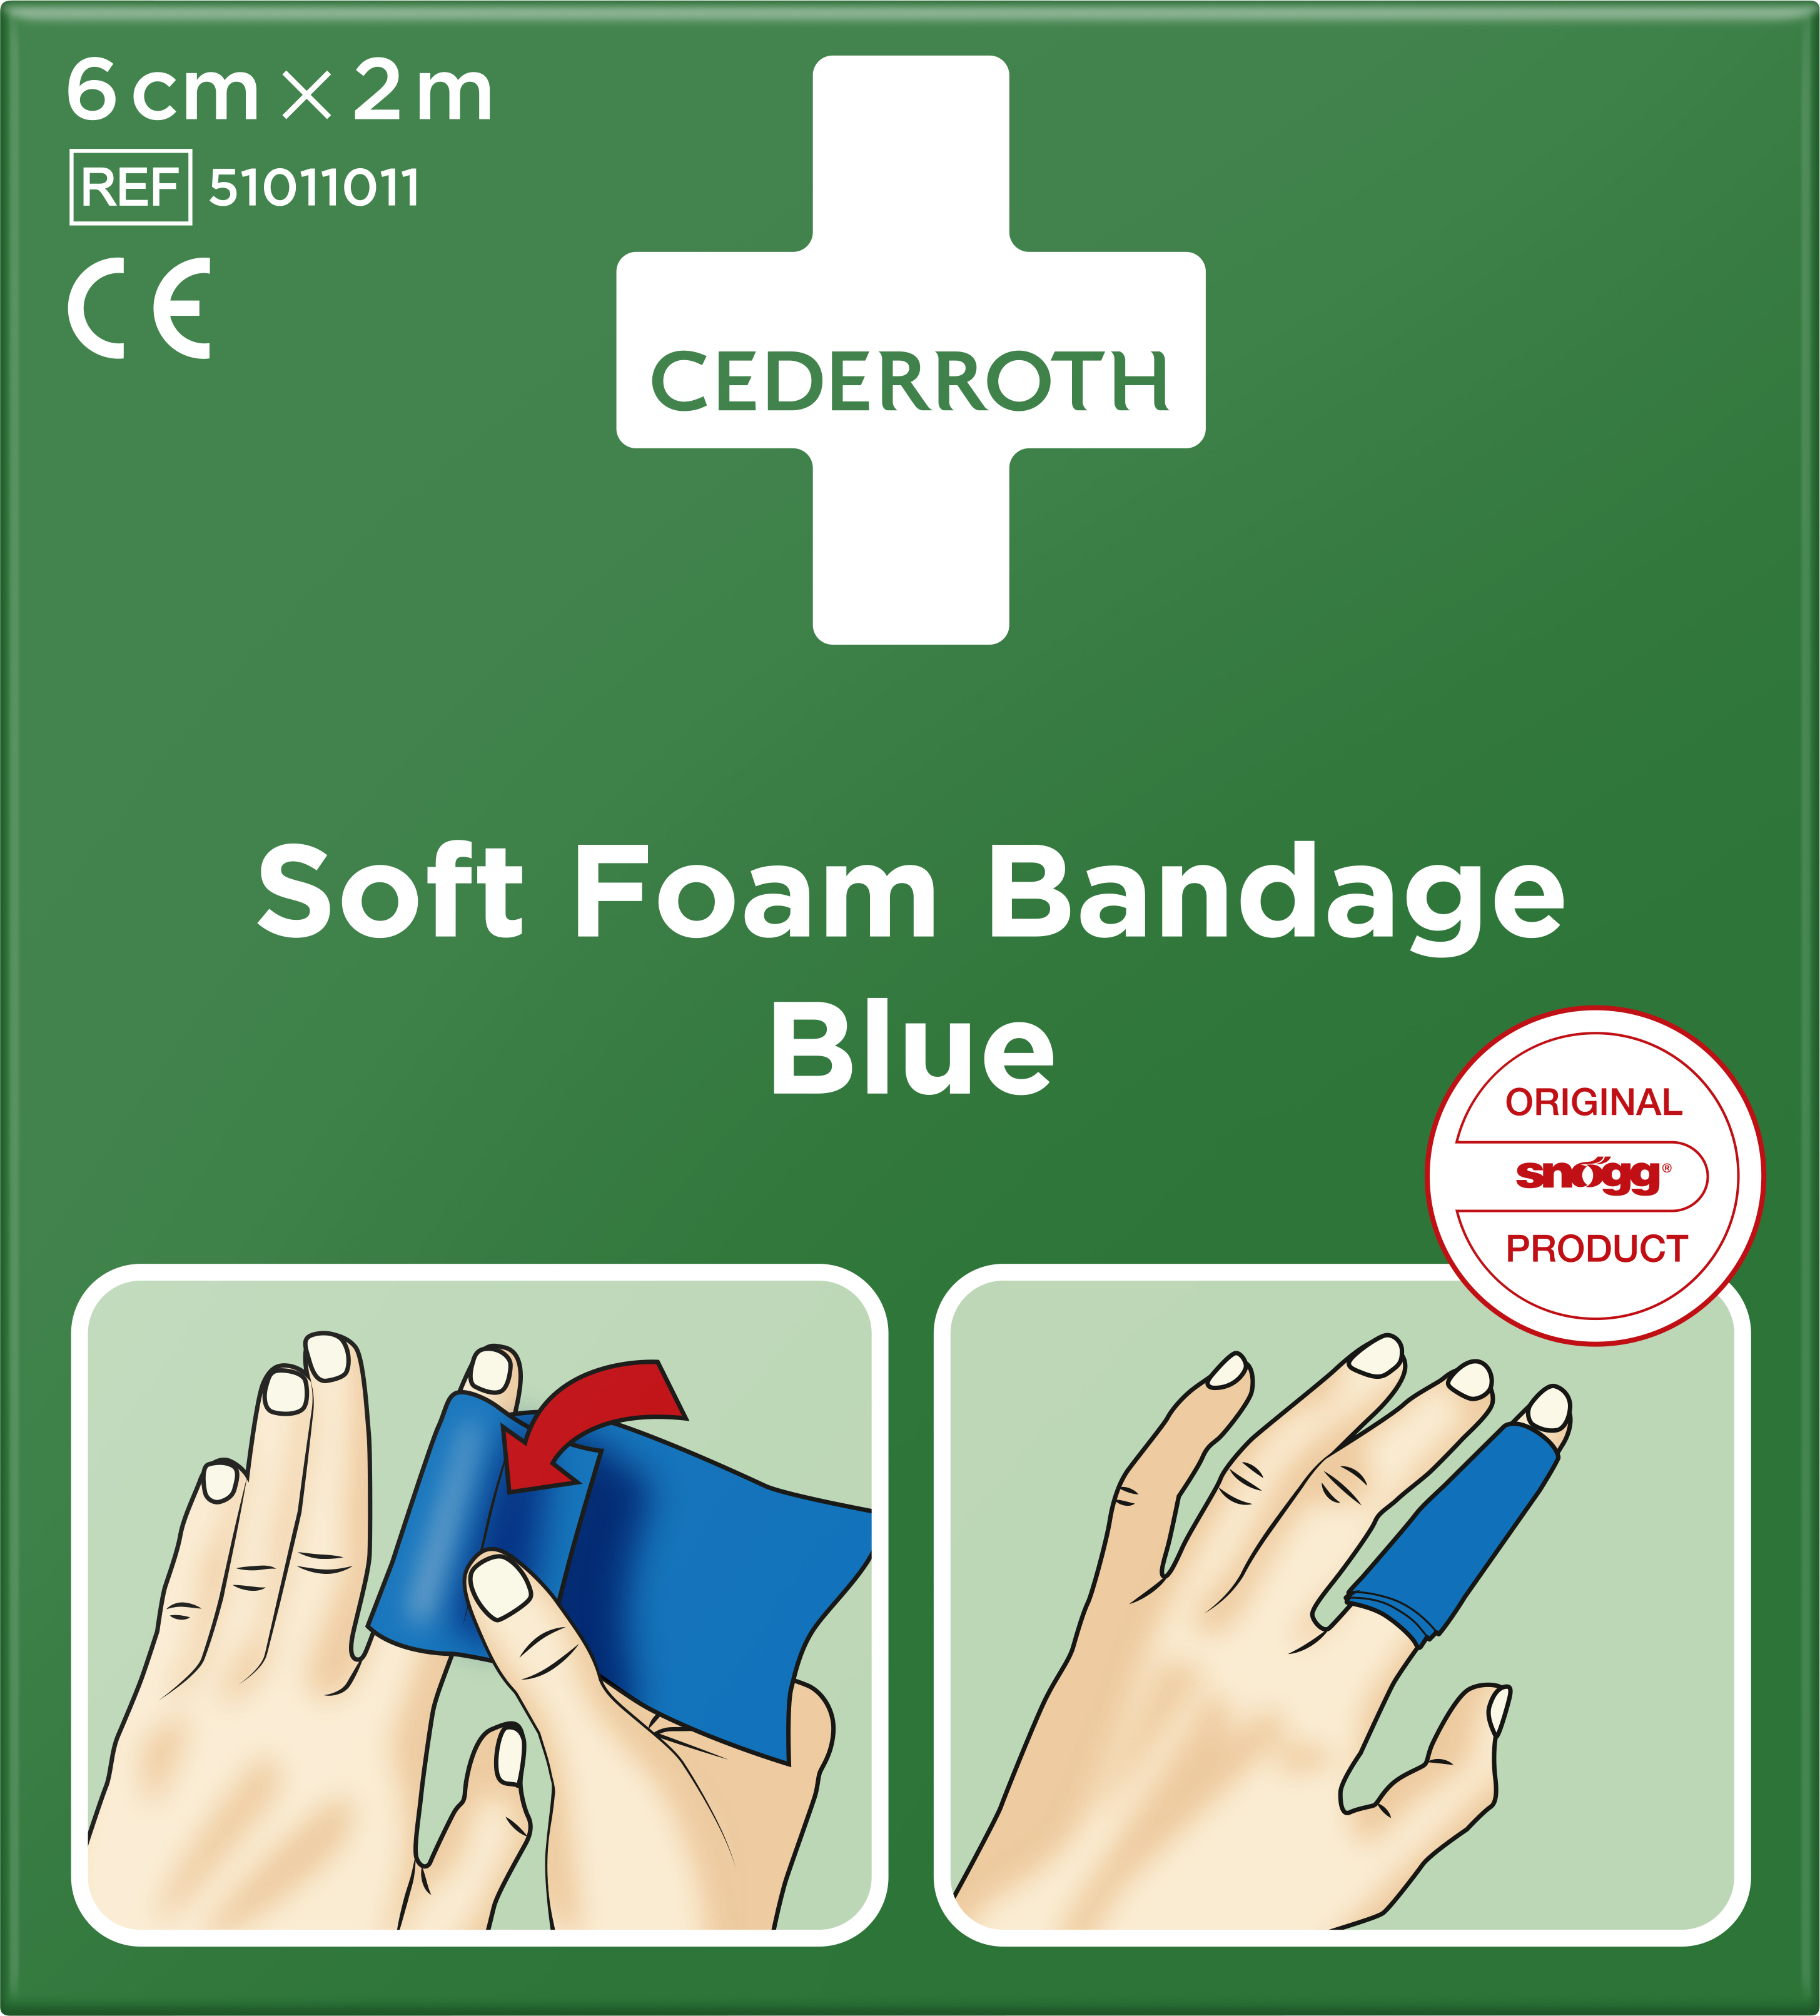 CEDERROTH Soft Foam Bandage Blue 6 cm x 2 m